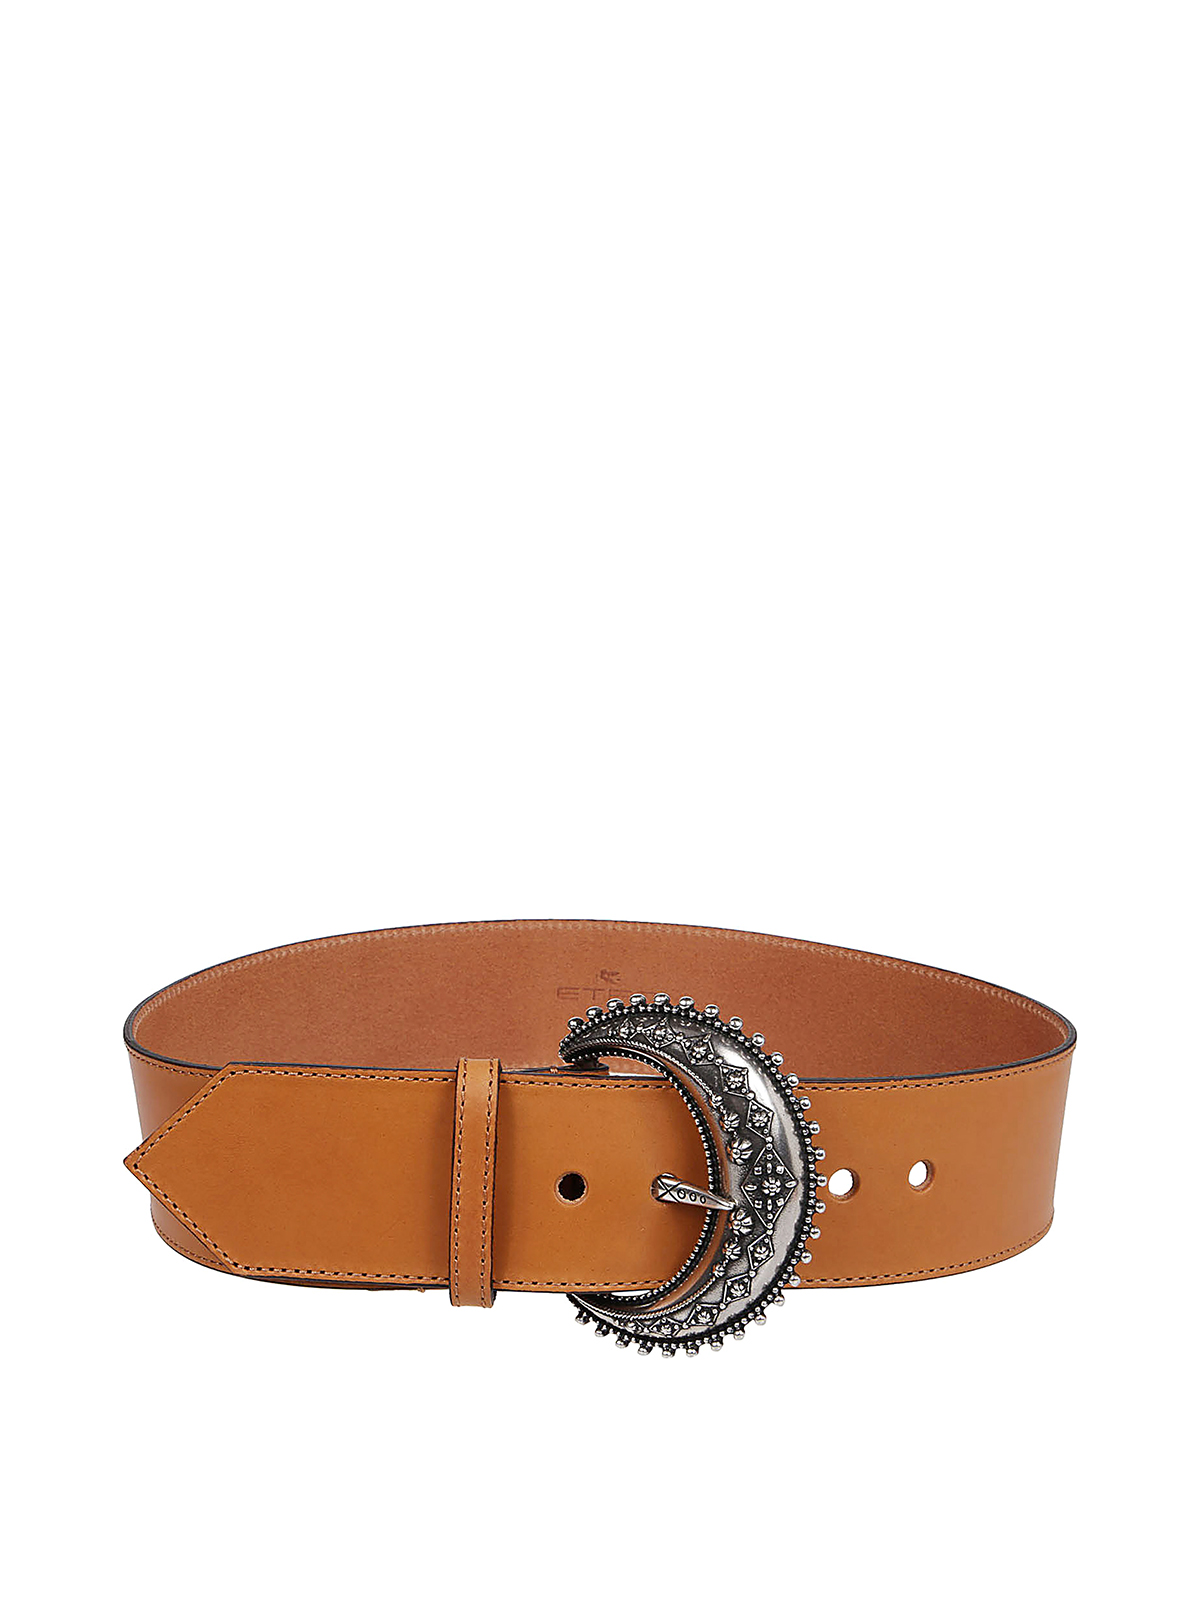 Belts Etro - Leather belt - 1N17224100155 | Shop online at iKRIX